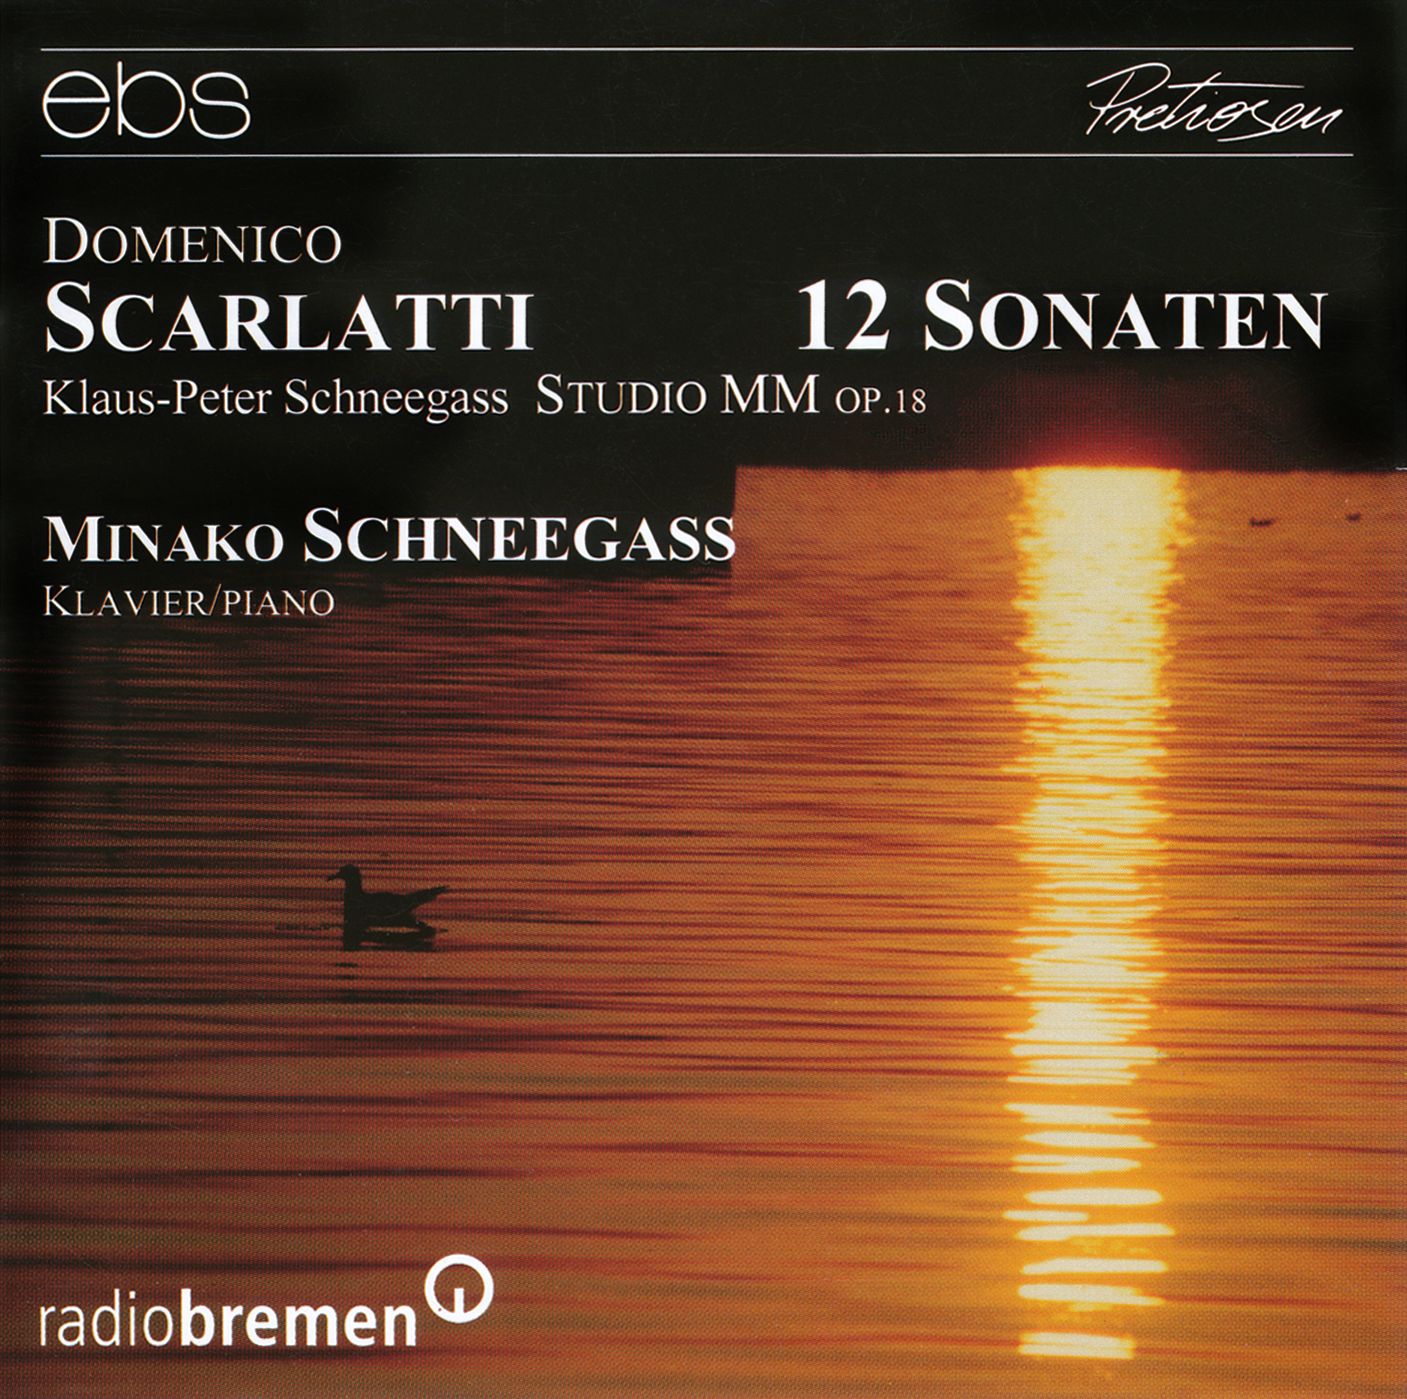 Domenico Scarlatti - 12 Sonaten